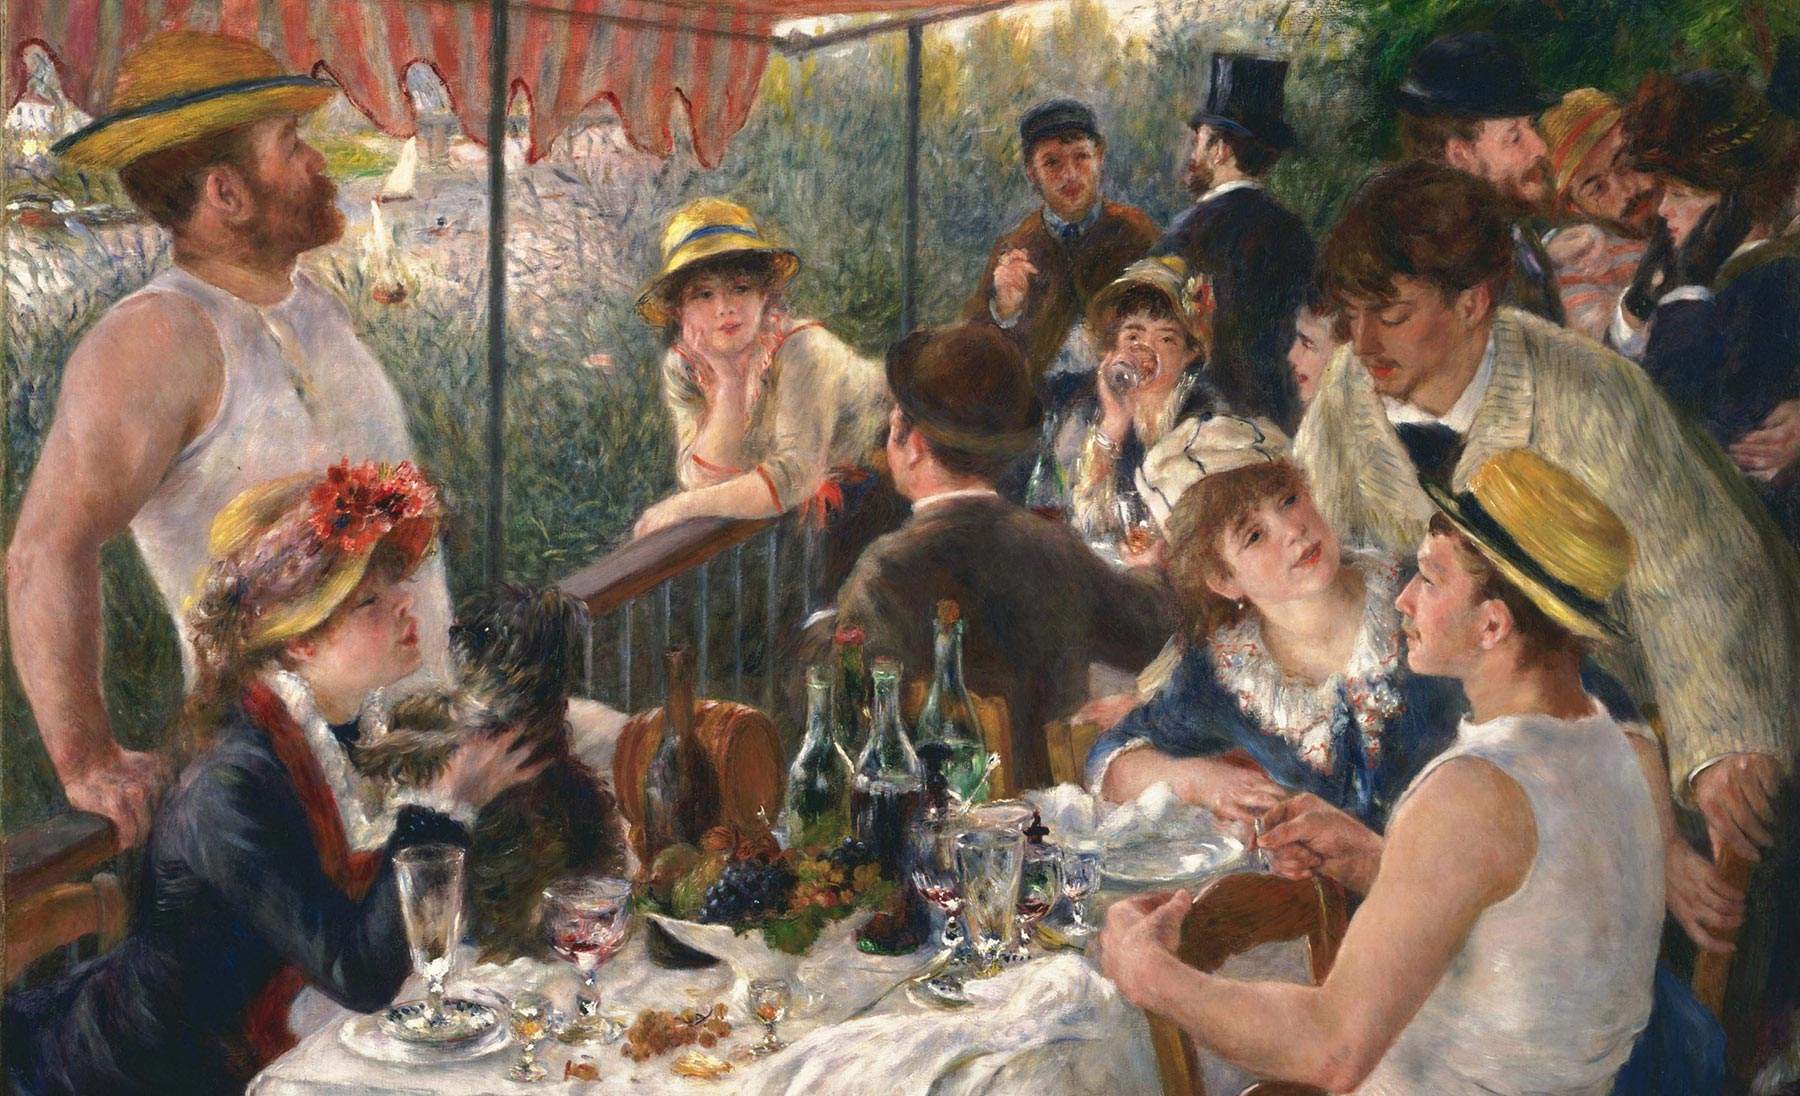 Pierre-Auguste Renoir, Leben und Werk des Impressionisten der Lebensfreude